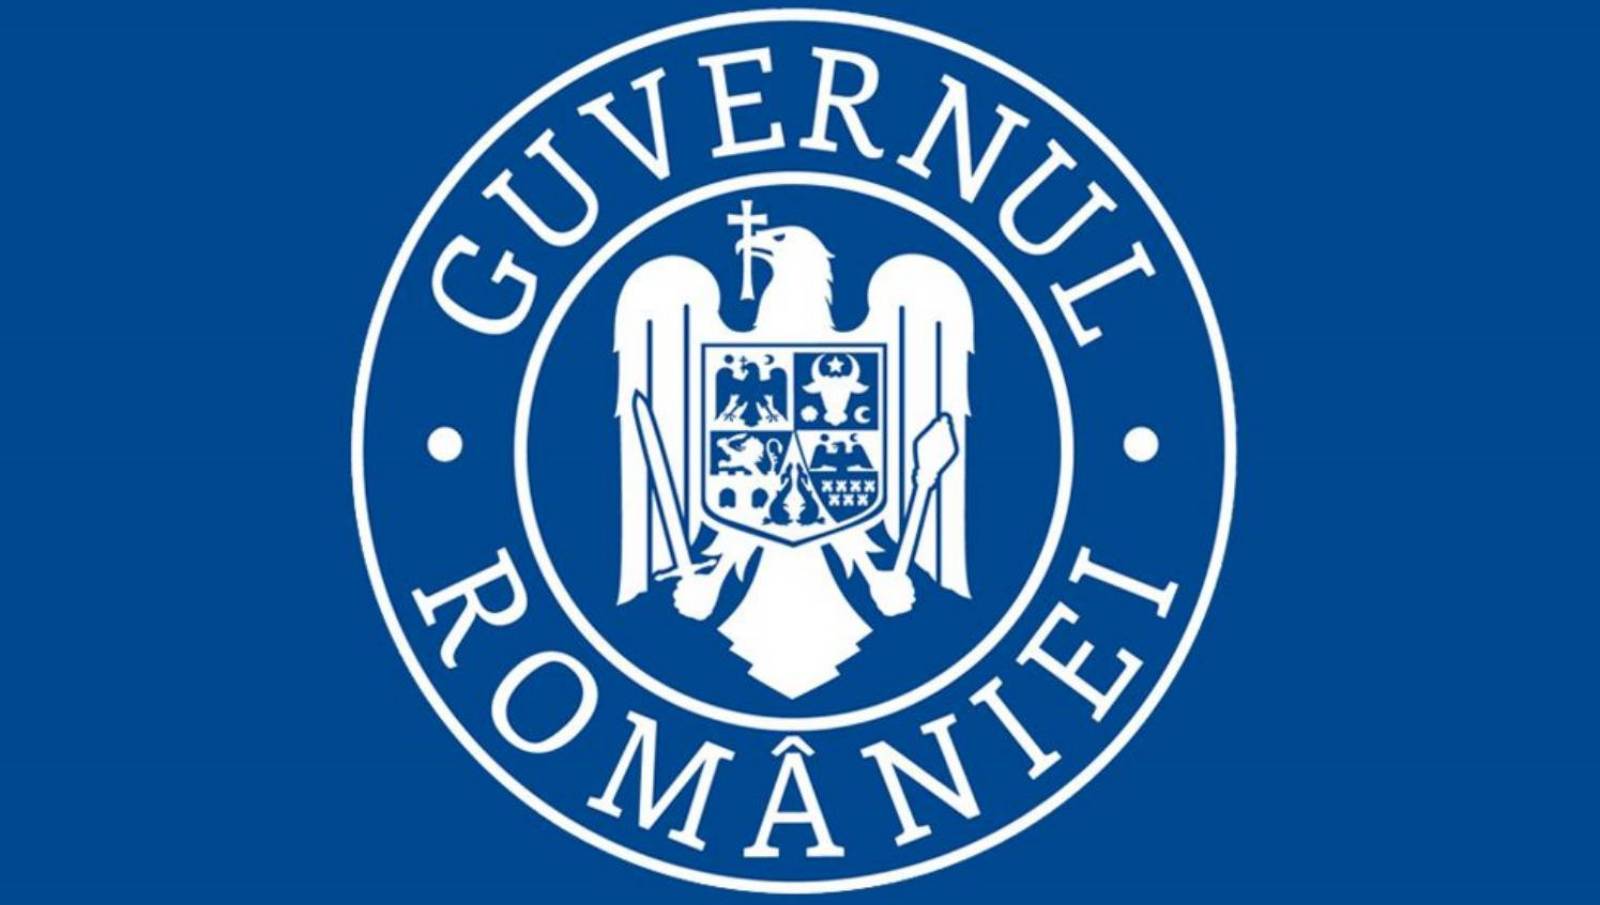 De Roemeense overheid behandelt coronaviruspatiënten